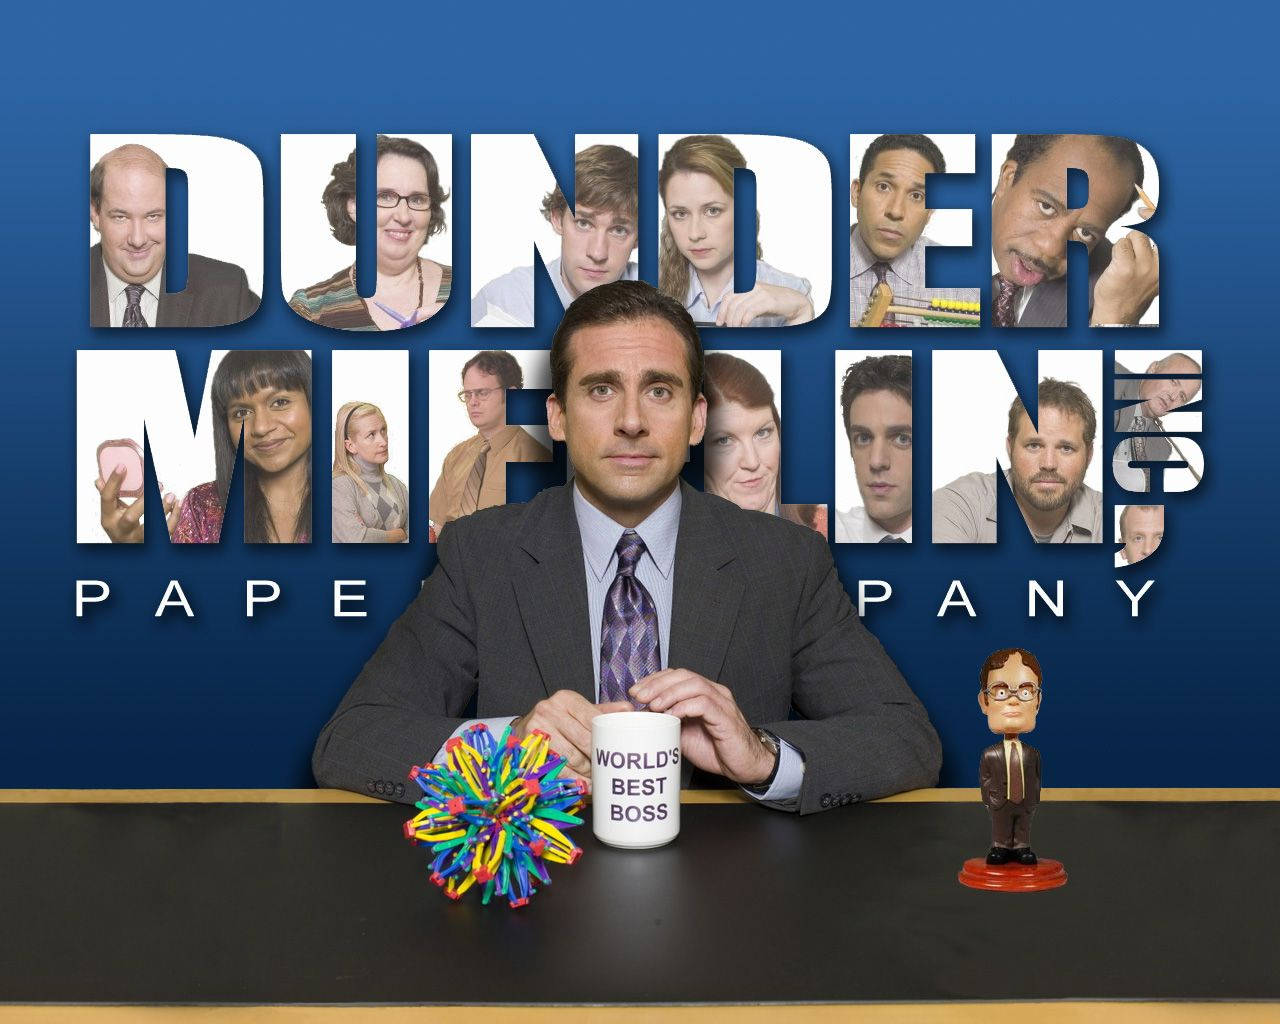 The Office Dunder Mifflin Boss Background